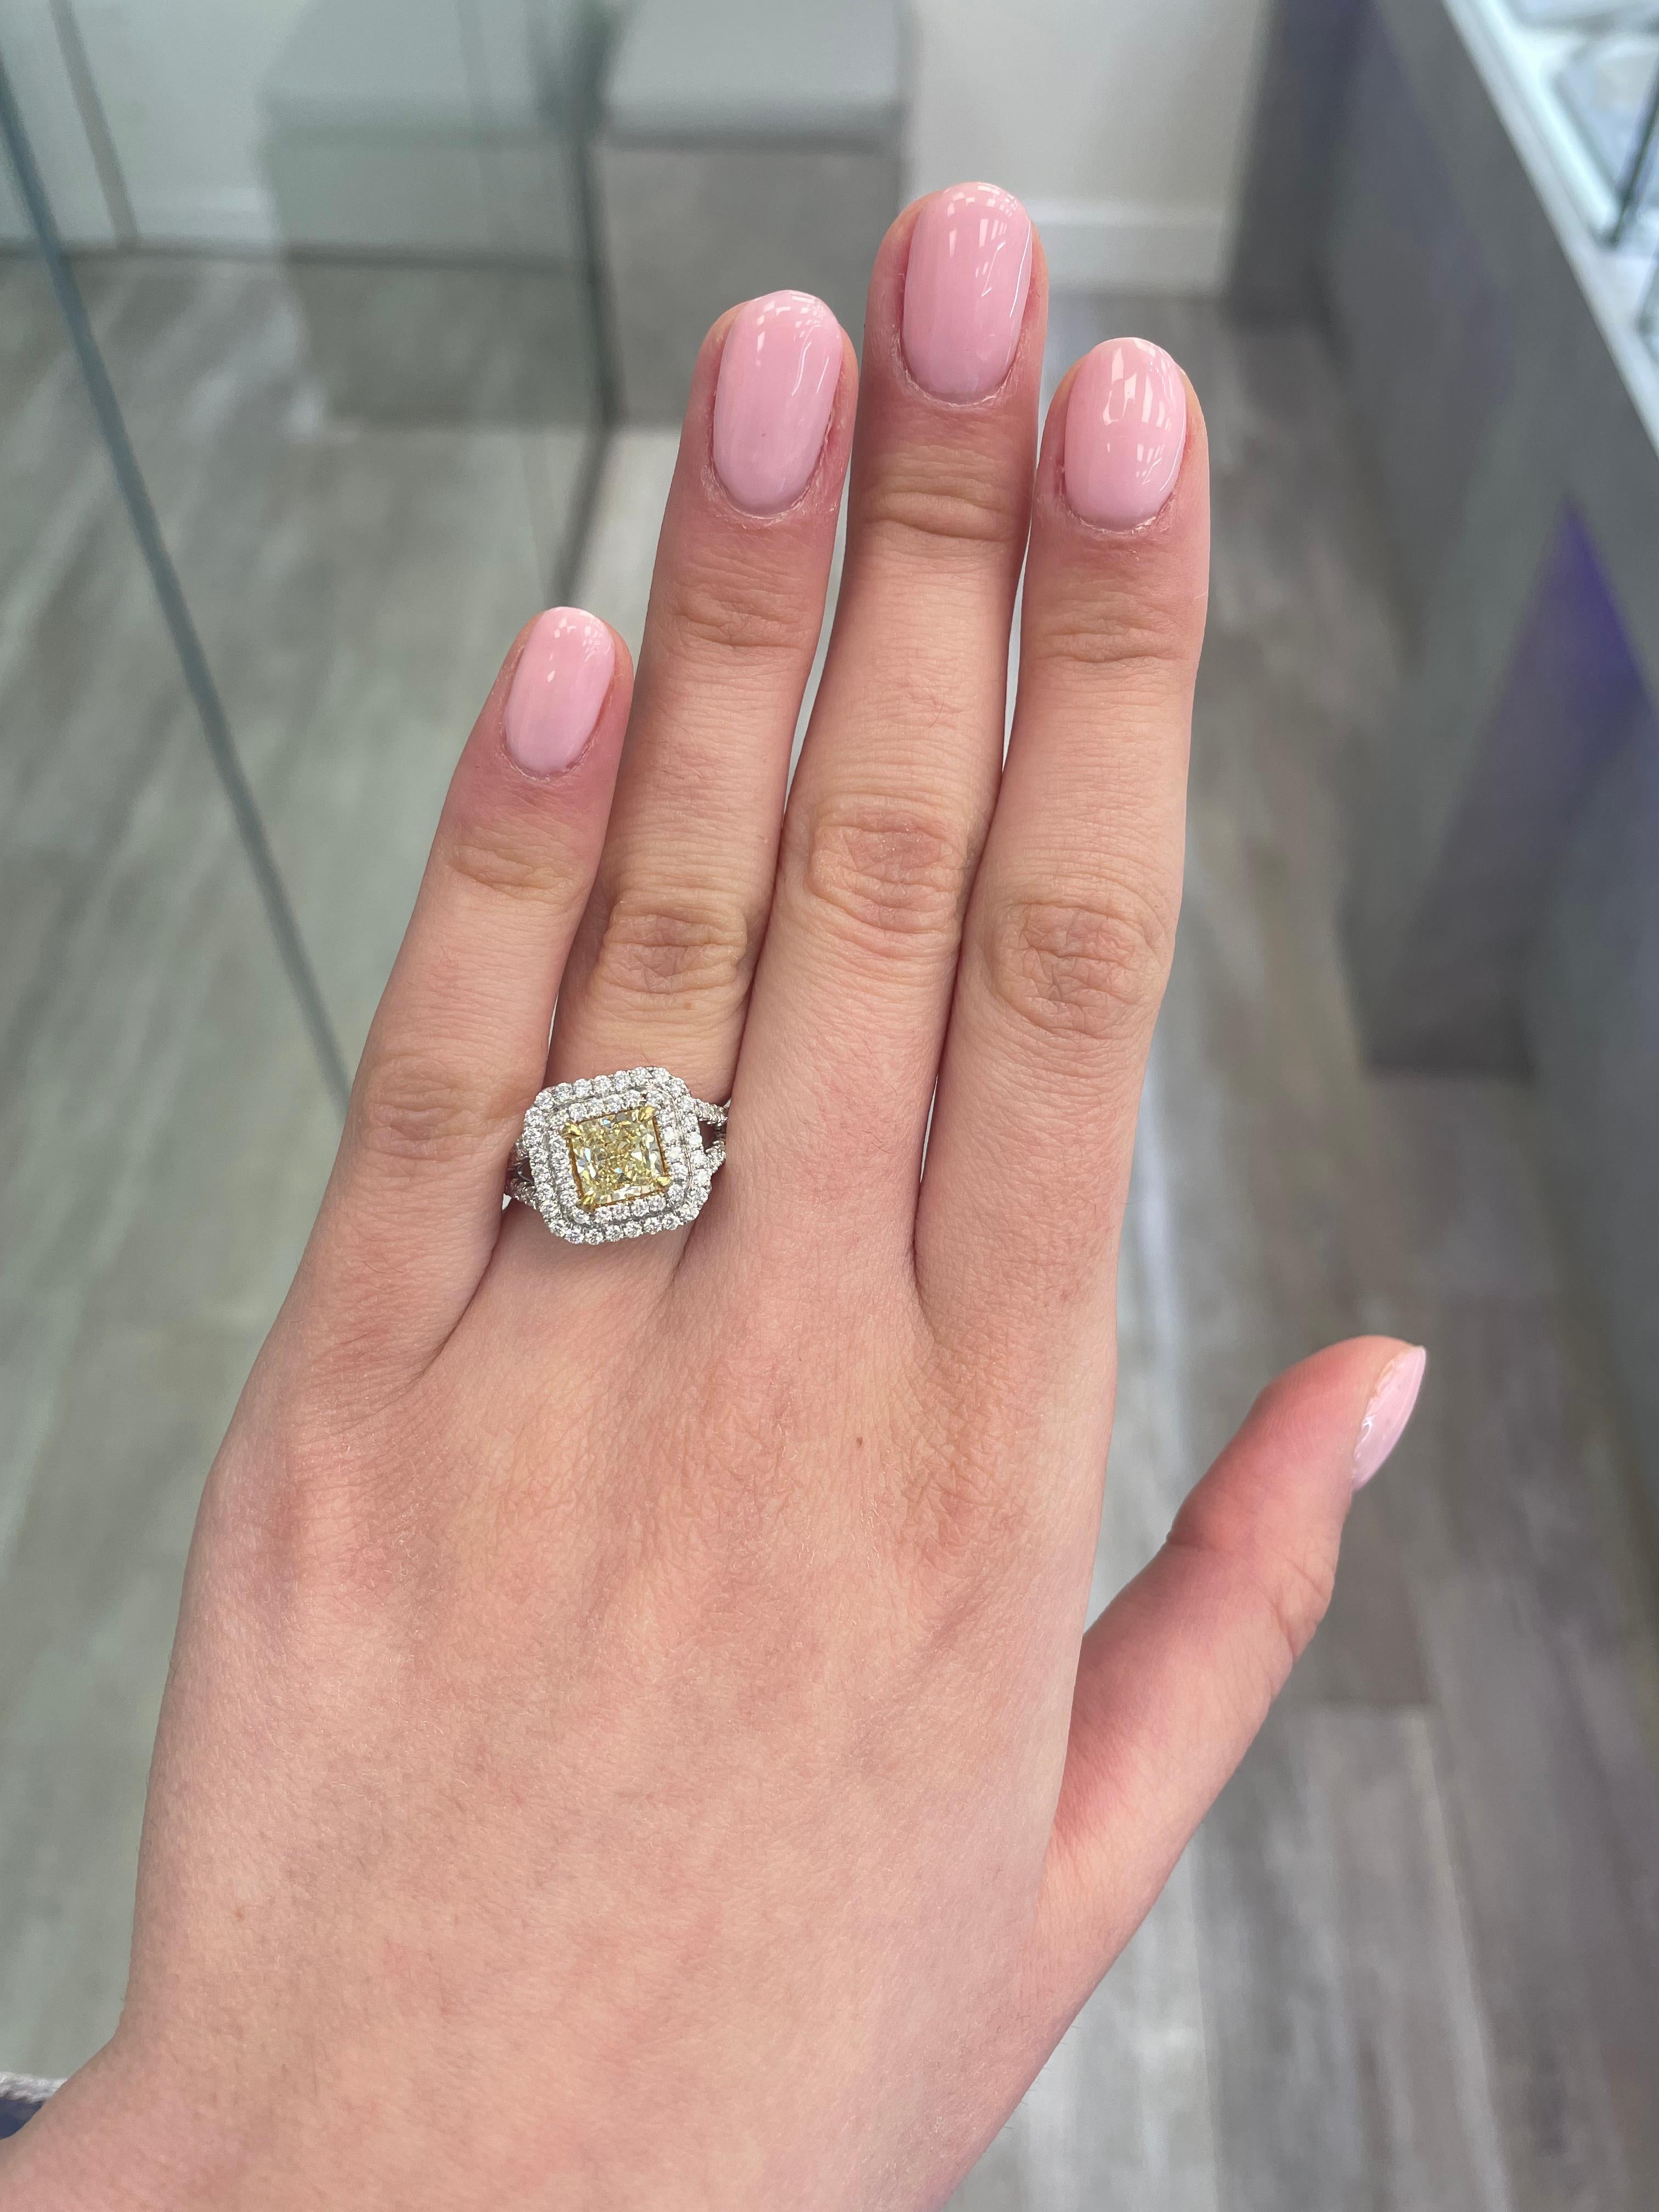 Atemberaubende moderne EGL zertifiziert fancy gelben Diamanten Doppel Halo Ring, zweifarbig 18k Gelb- und Weißgold, Split Shank. Von Alexander Beverly Hills
2.33 Karat Gesamtgewicht der Diamanten.
1.53 Karat strahlender Diamant der Farbe Fancy